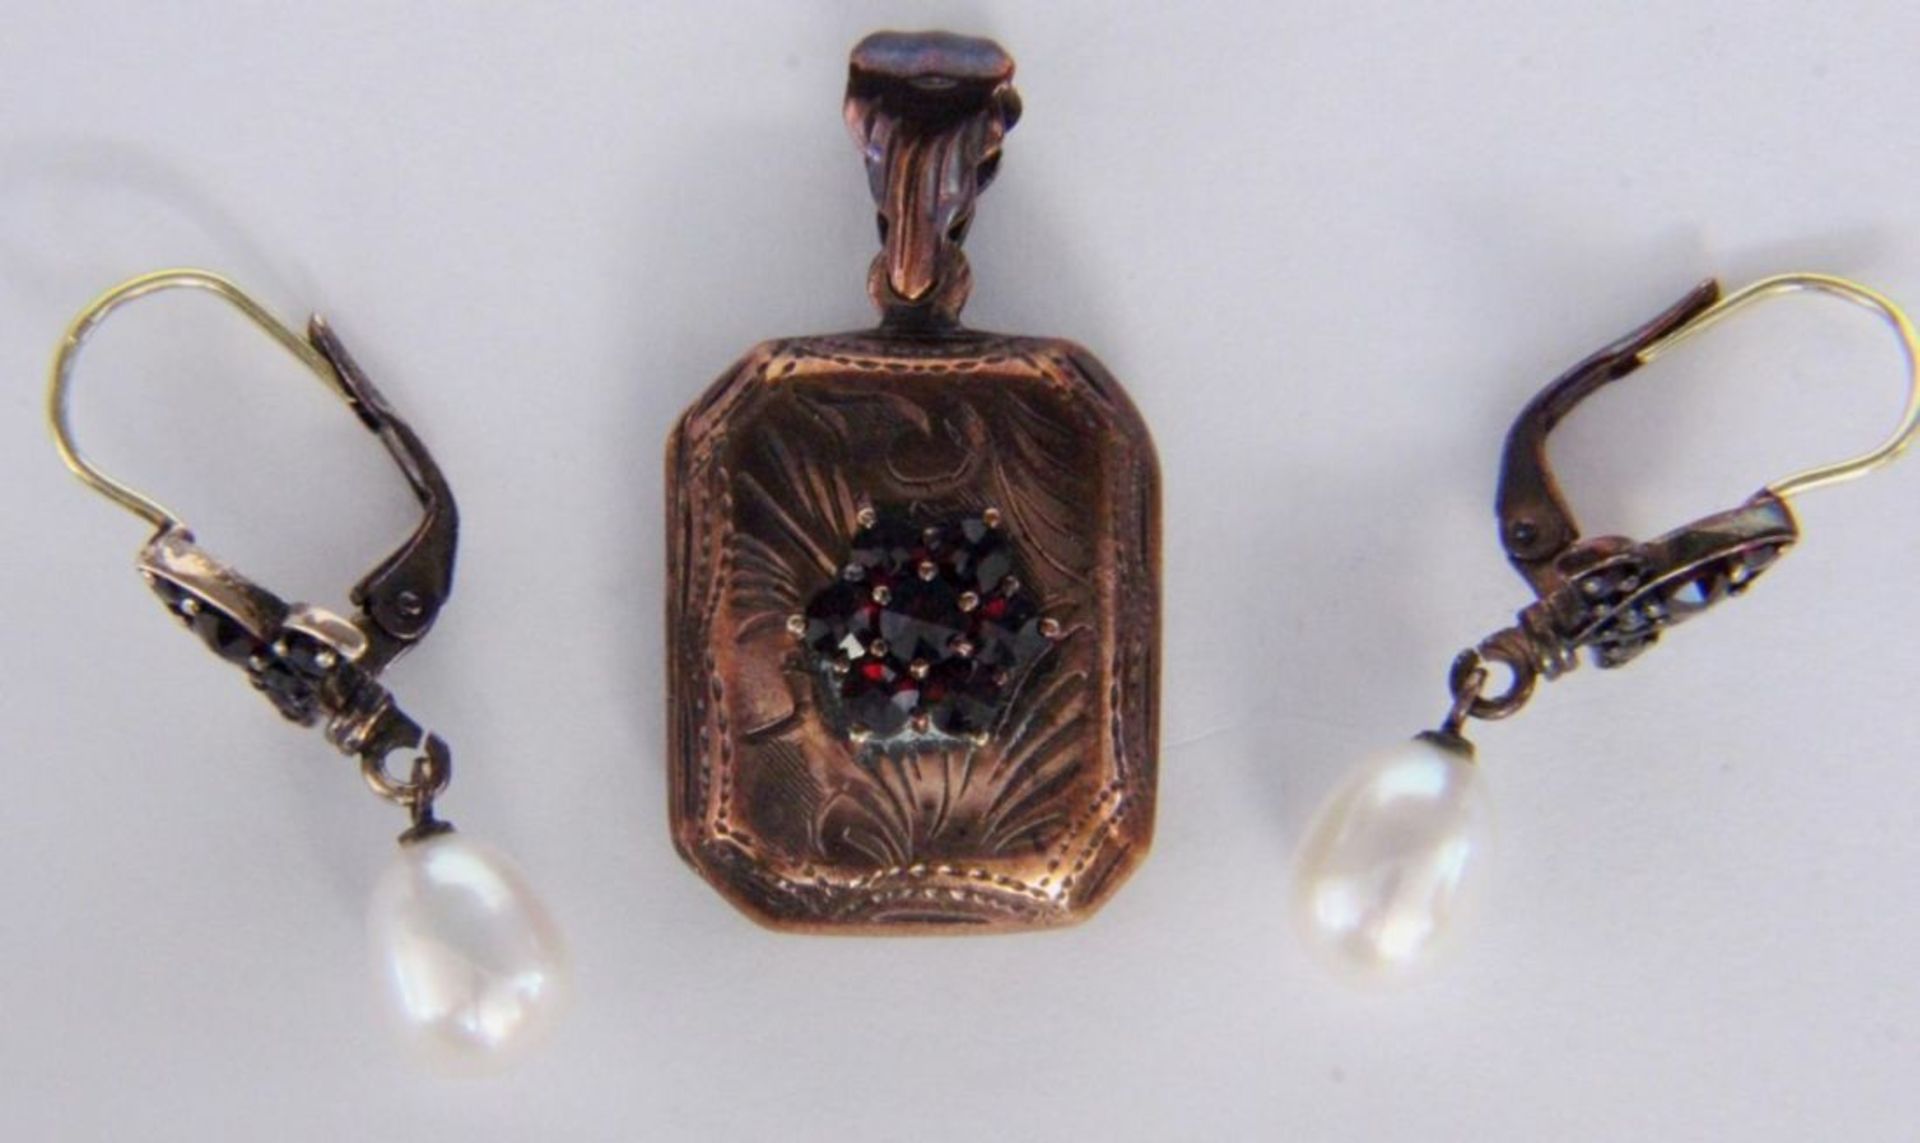 ANHÄNGER UND PAAR OHRHÄNGERSilber vergoldet mit Granatbesatz und 2 kleinen Perlen an den Ohrhängern.